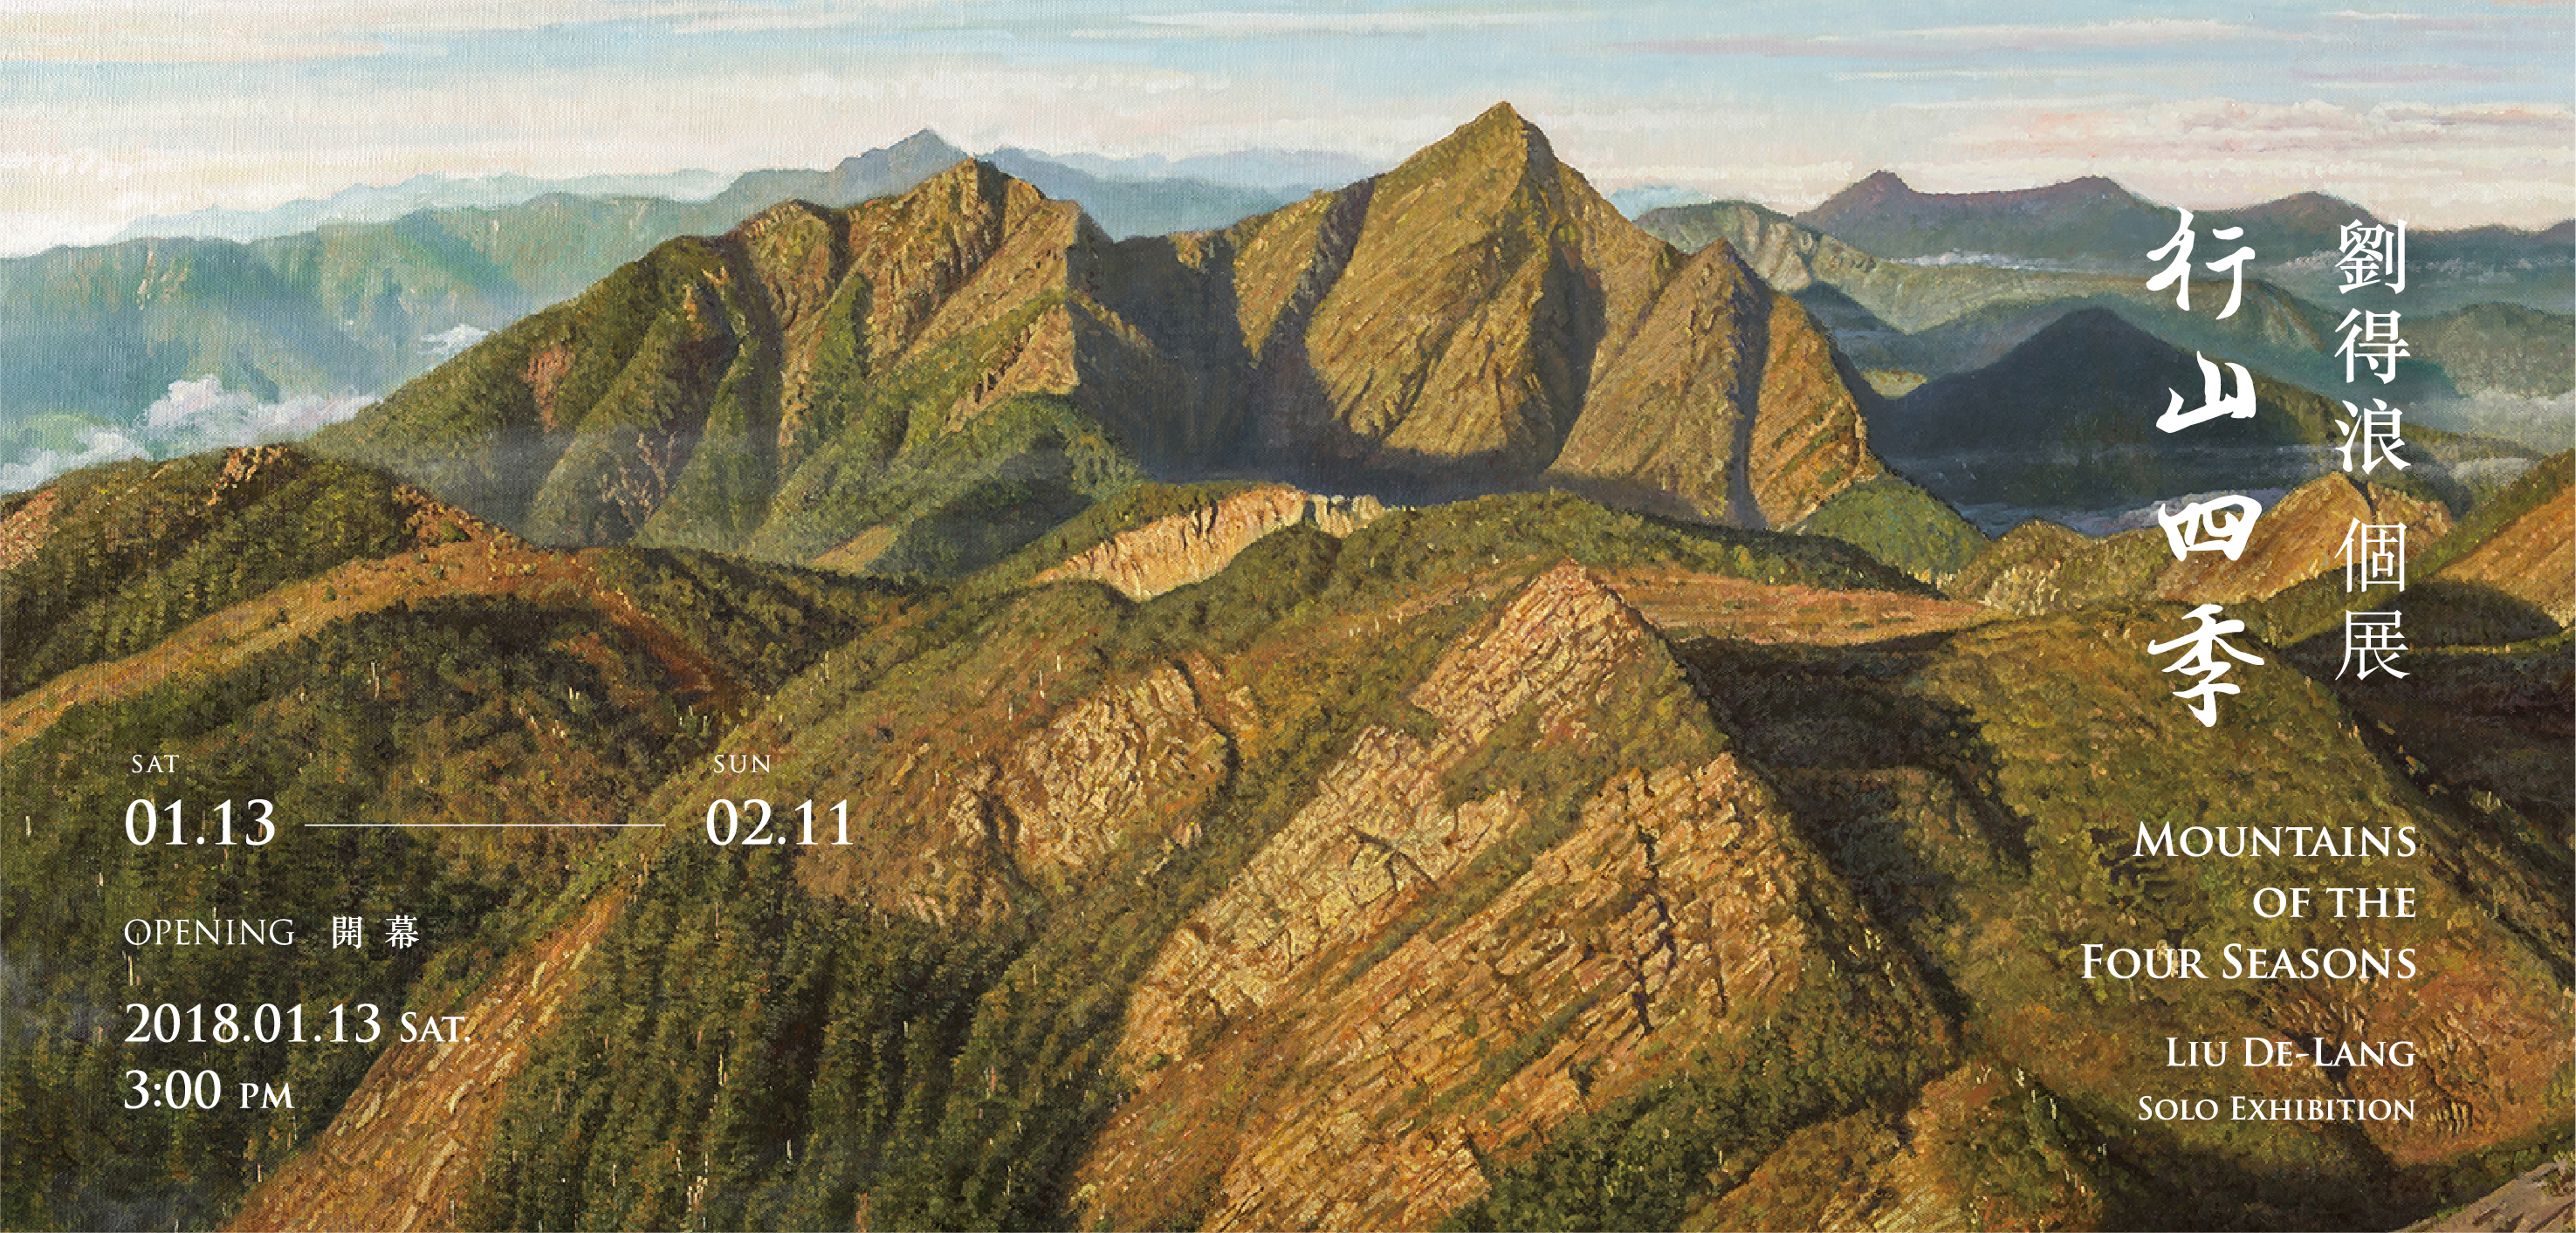 Mountains of the Four Seasons — LIU De-Lang Solo Exhibition